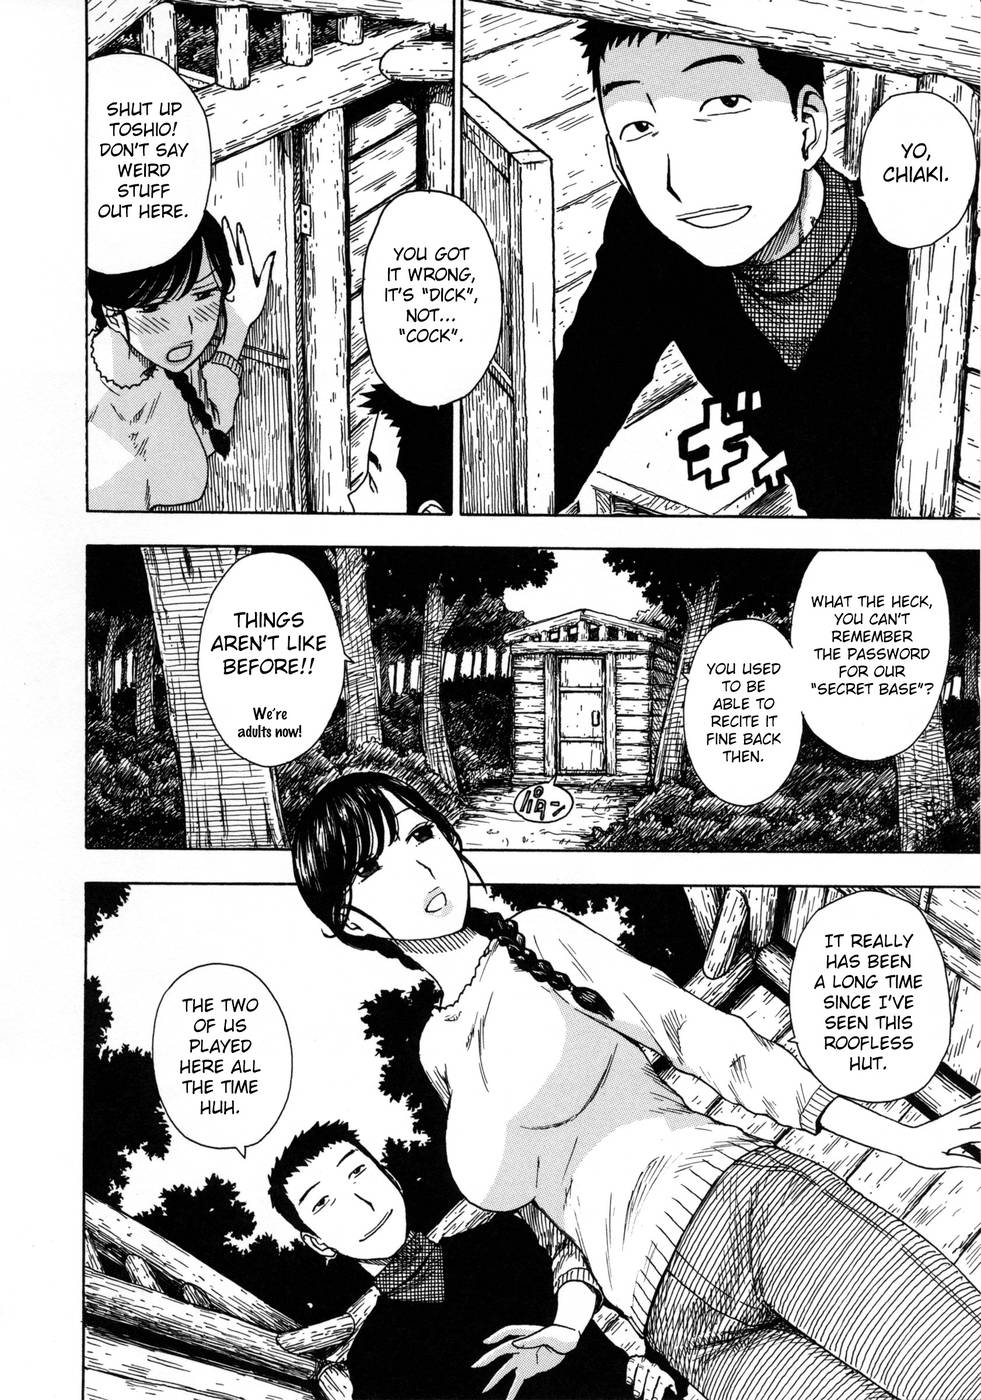 Hentai Manga Comic-Hitozuma-Chapter 11-Serect Base-2